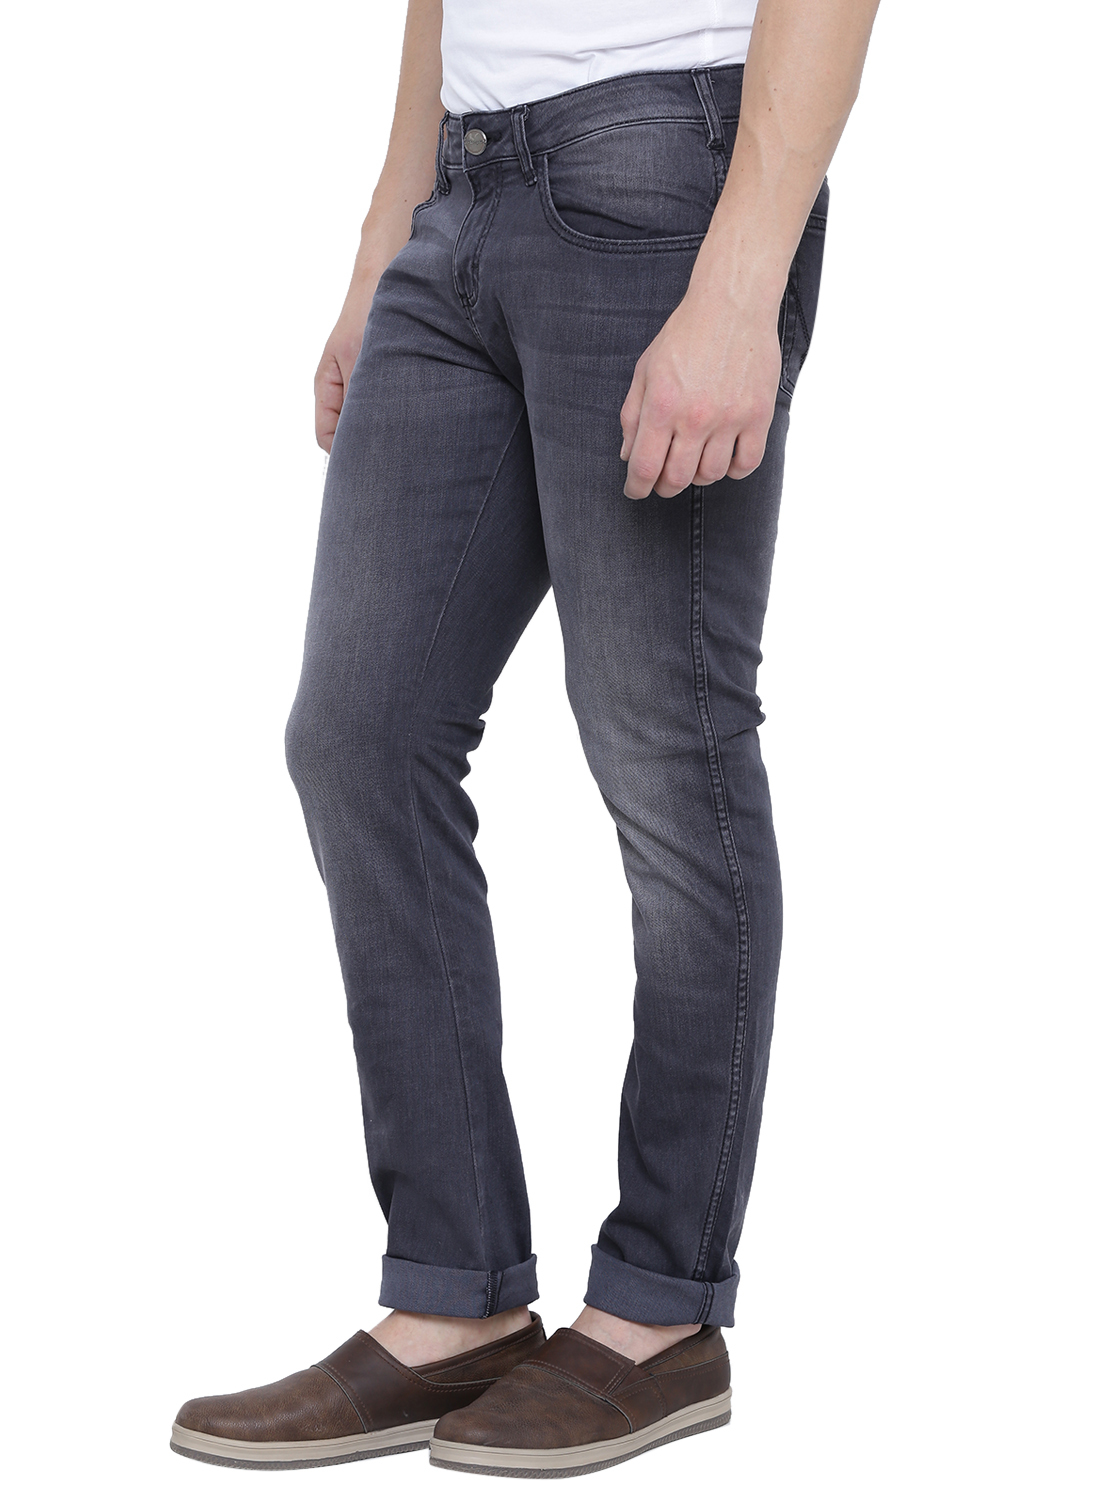 Buy Wrangler Gray Mid Rise Slim Fit Jeans For Men Online @ ₹1957 from ...